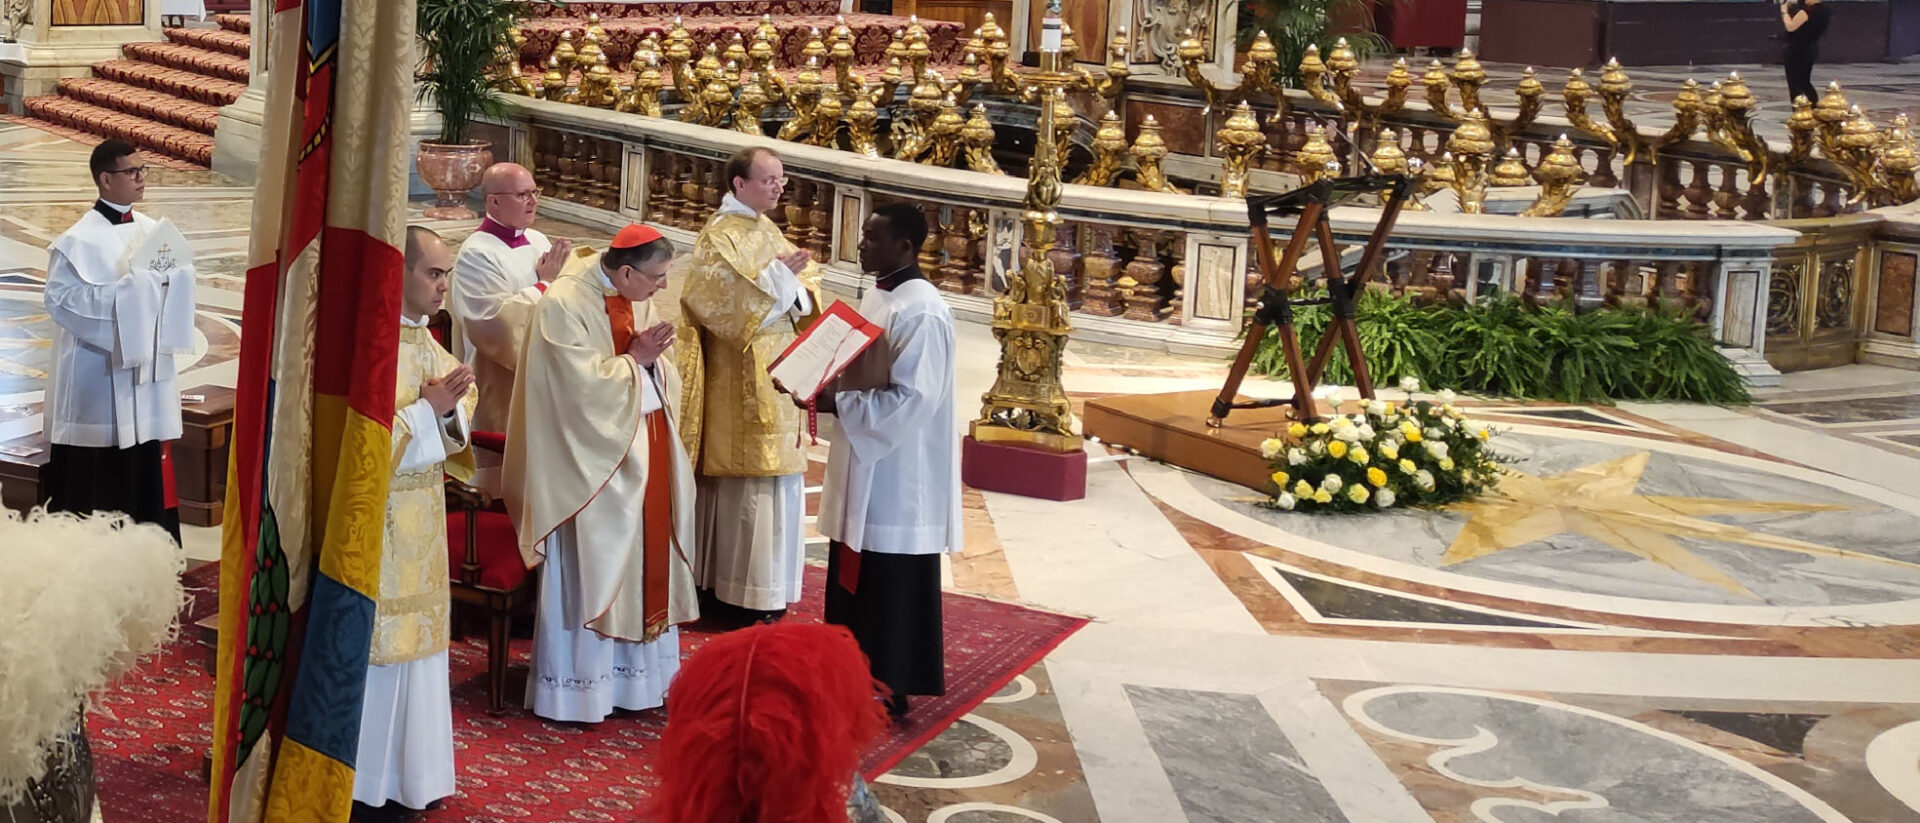 Le cardinal Kurt Koch a célébré la messe pour les futurs gardes suisse qui prêteront serment dans l'après-midi du 6 mai | © Jacqueline Straub/kath.ch